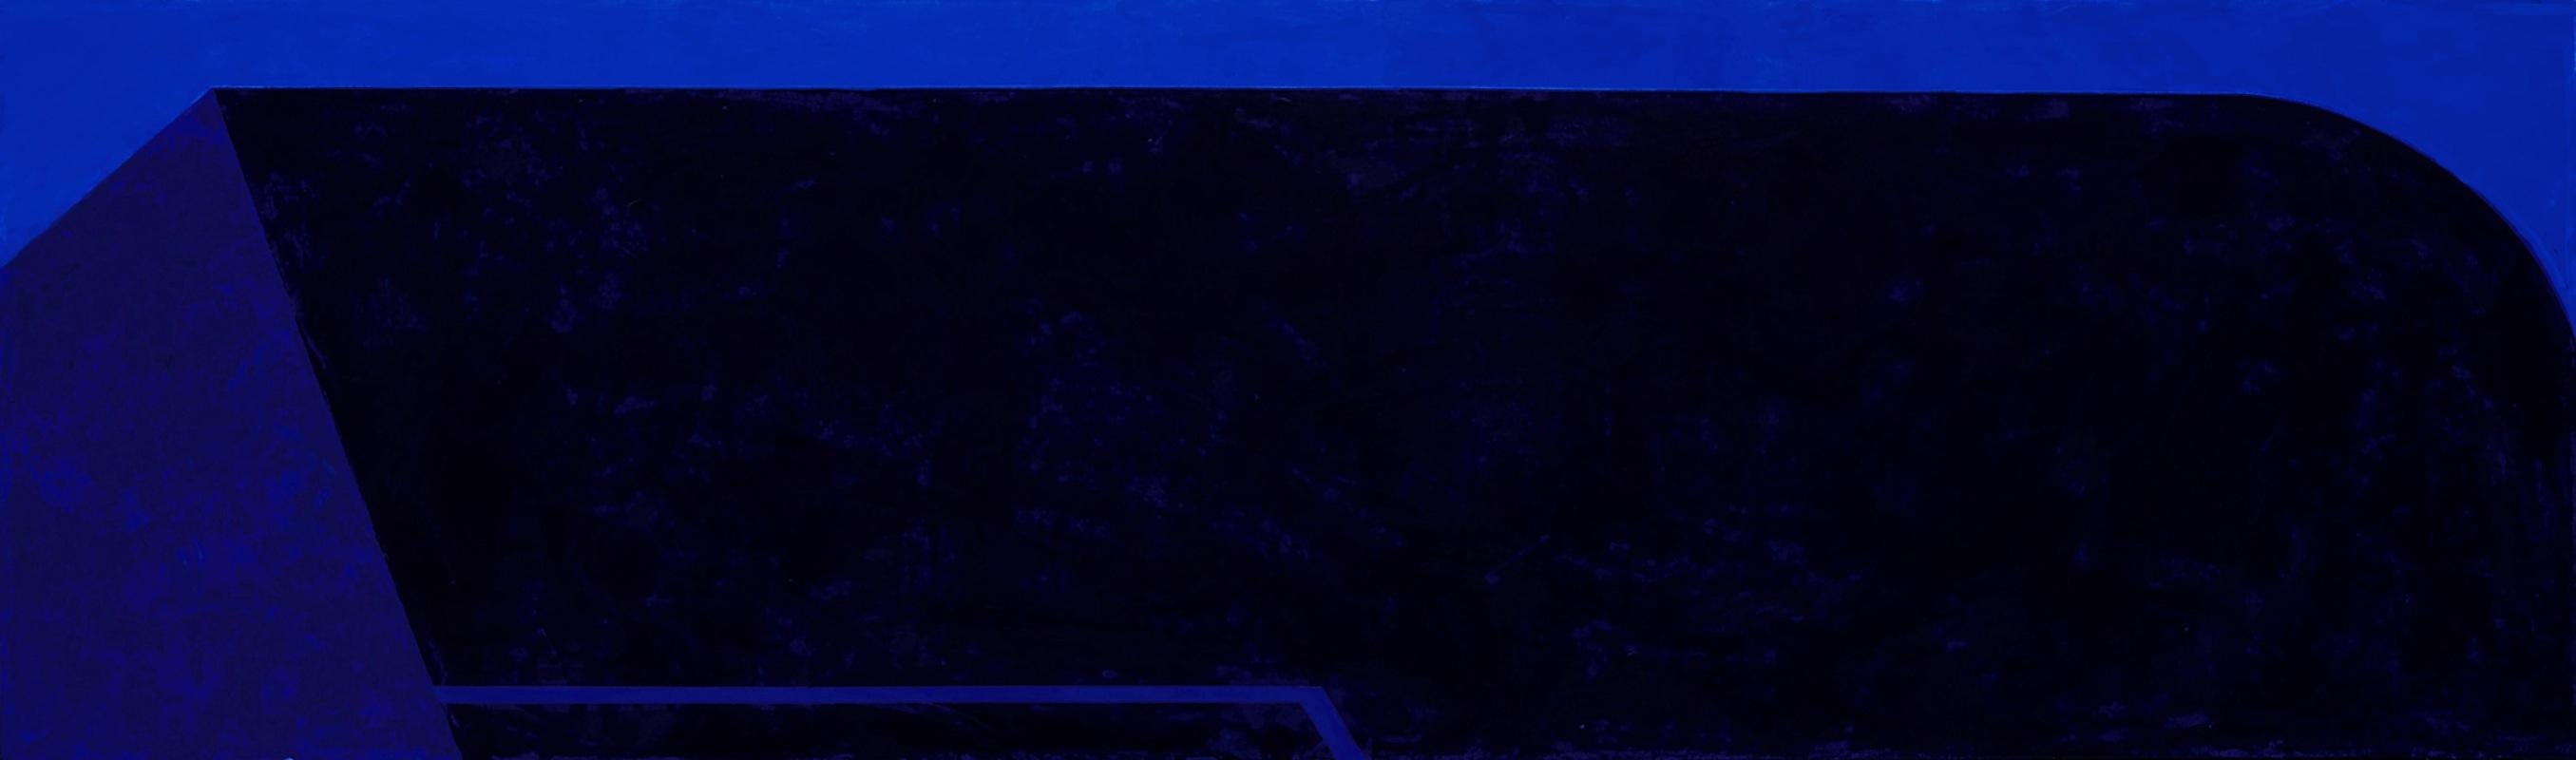 Macyn Bolt, Shift IV, 2018, Minimalist, acrylic on canvas, 16 x 20 x 2 inches For Sale 7